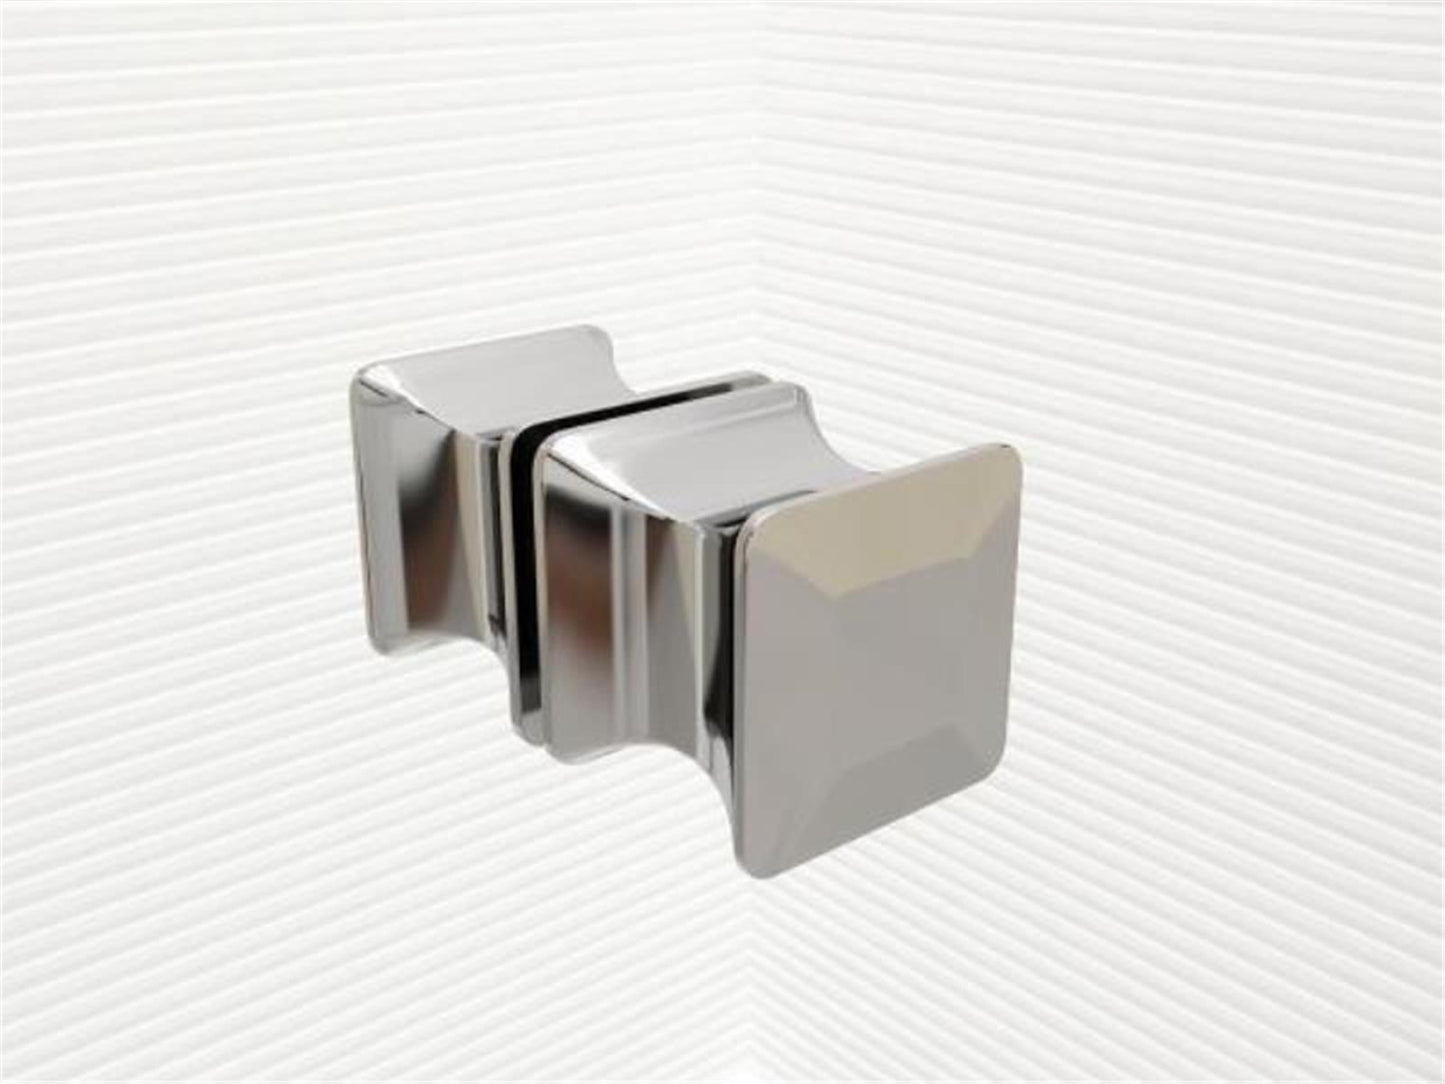 GlasHomeCenter - U-Duschkabine "Asuka" (120x100x195cm) - 8mm - Eckduschkabine - Duschabtrennung - ohne Duschtasse